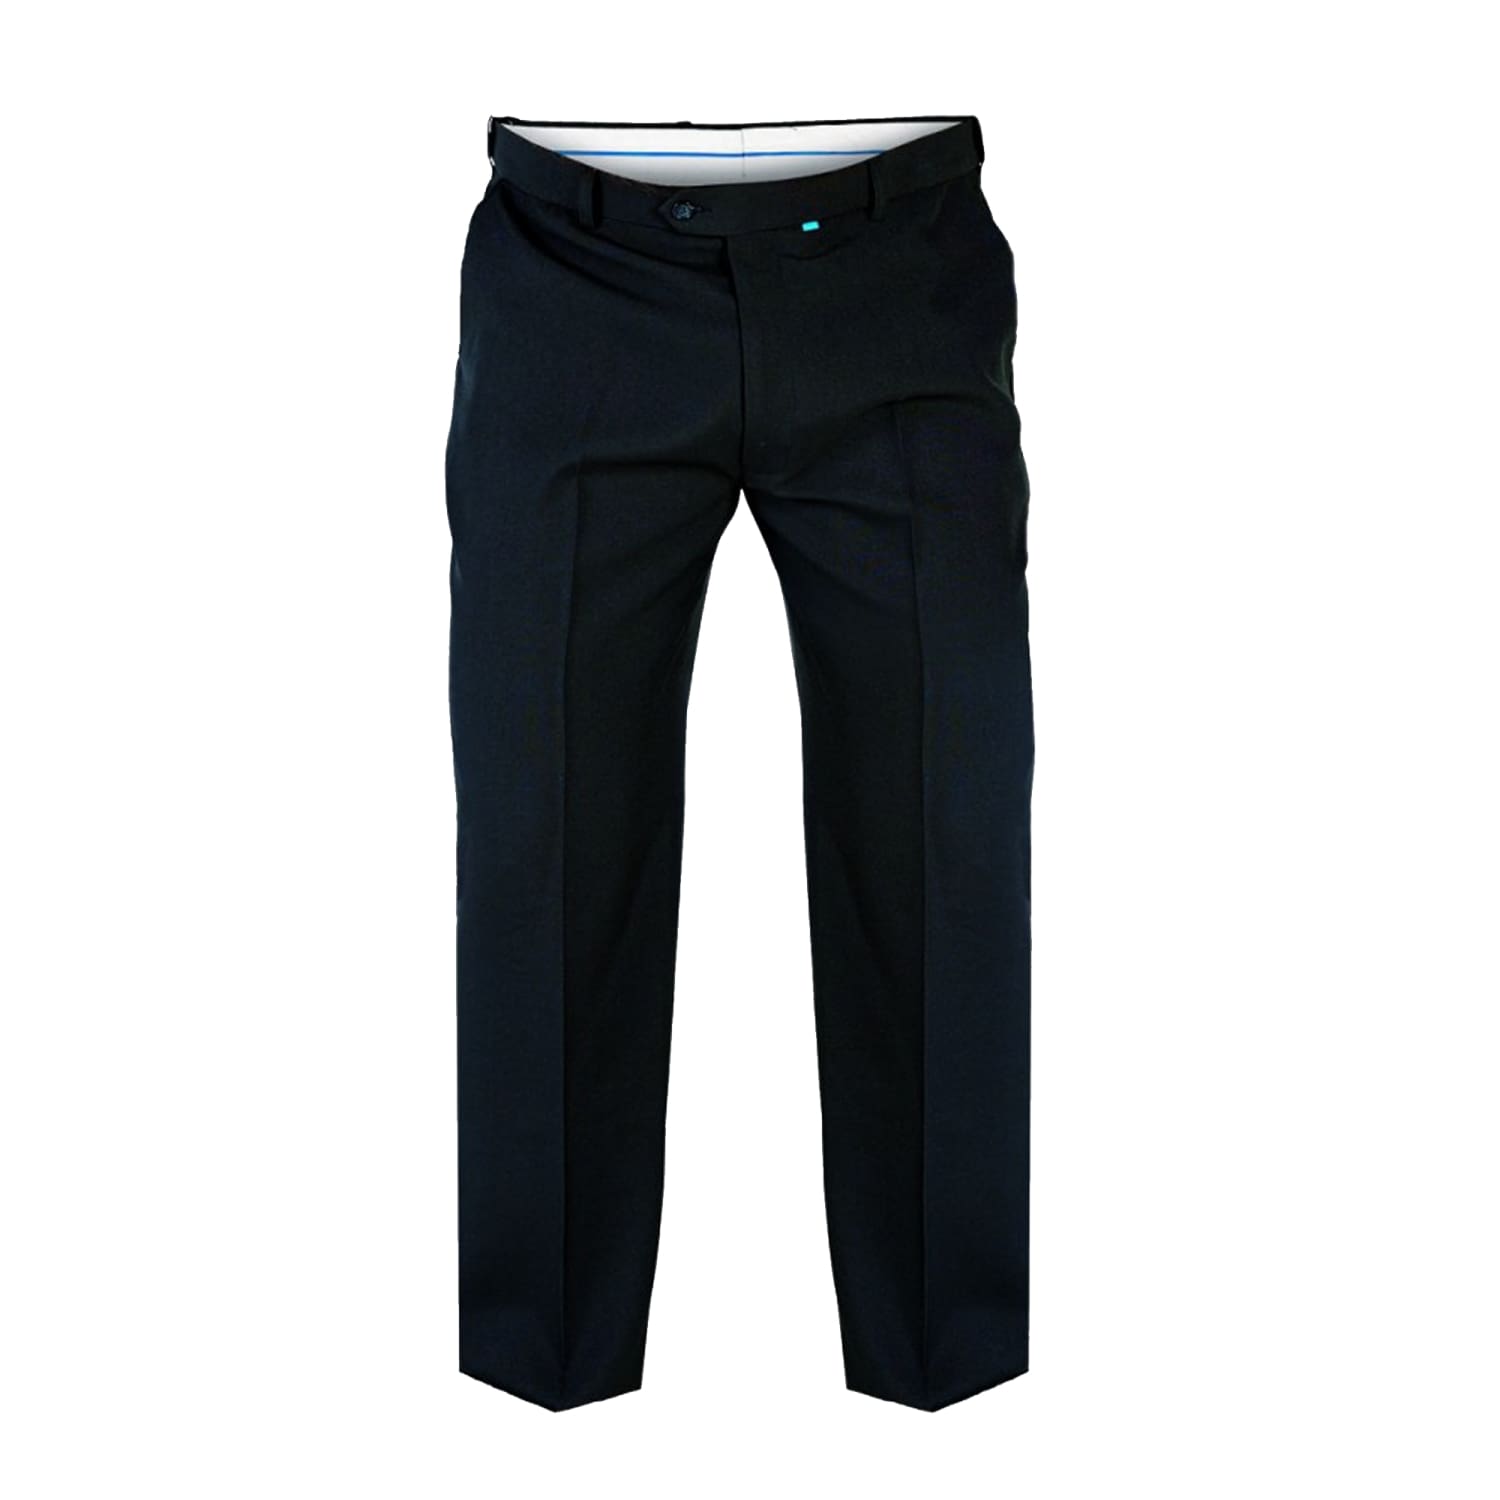 D555 Trousers - KS1404 - Max - Black 1